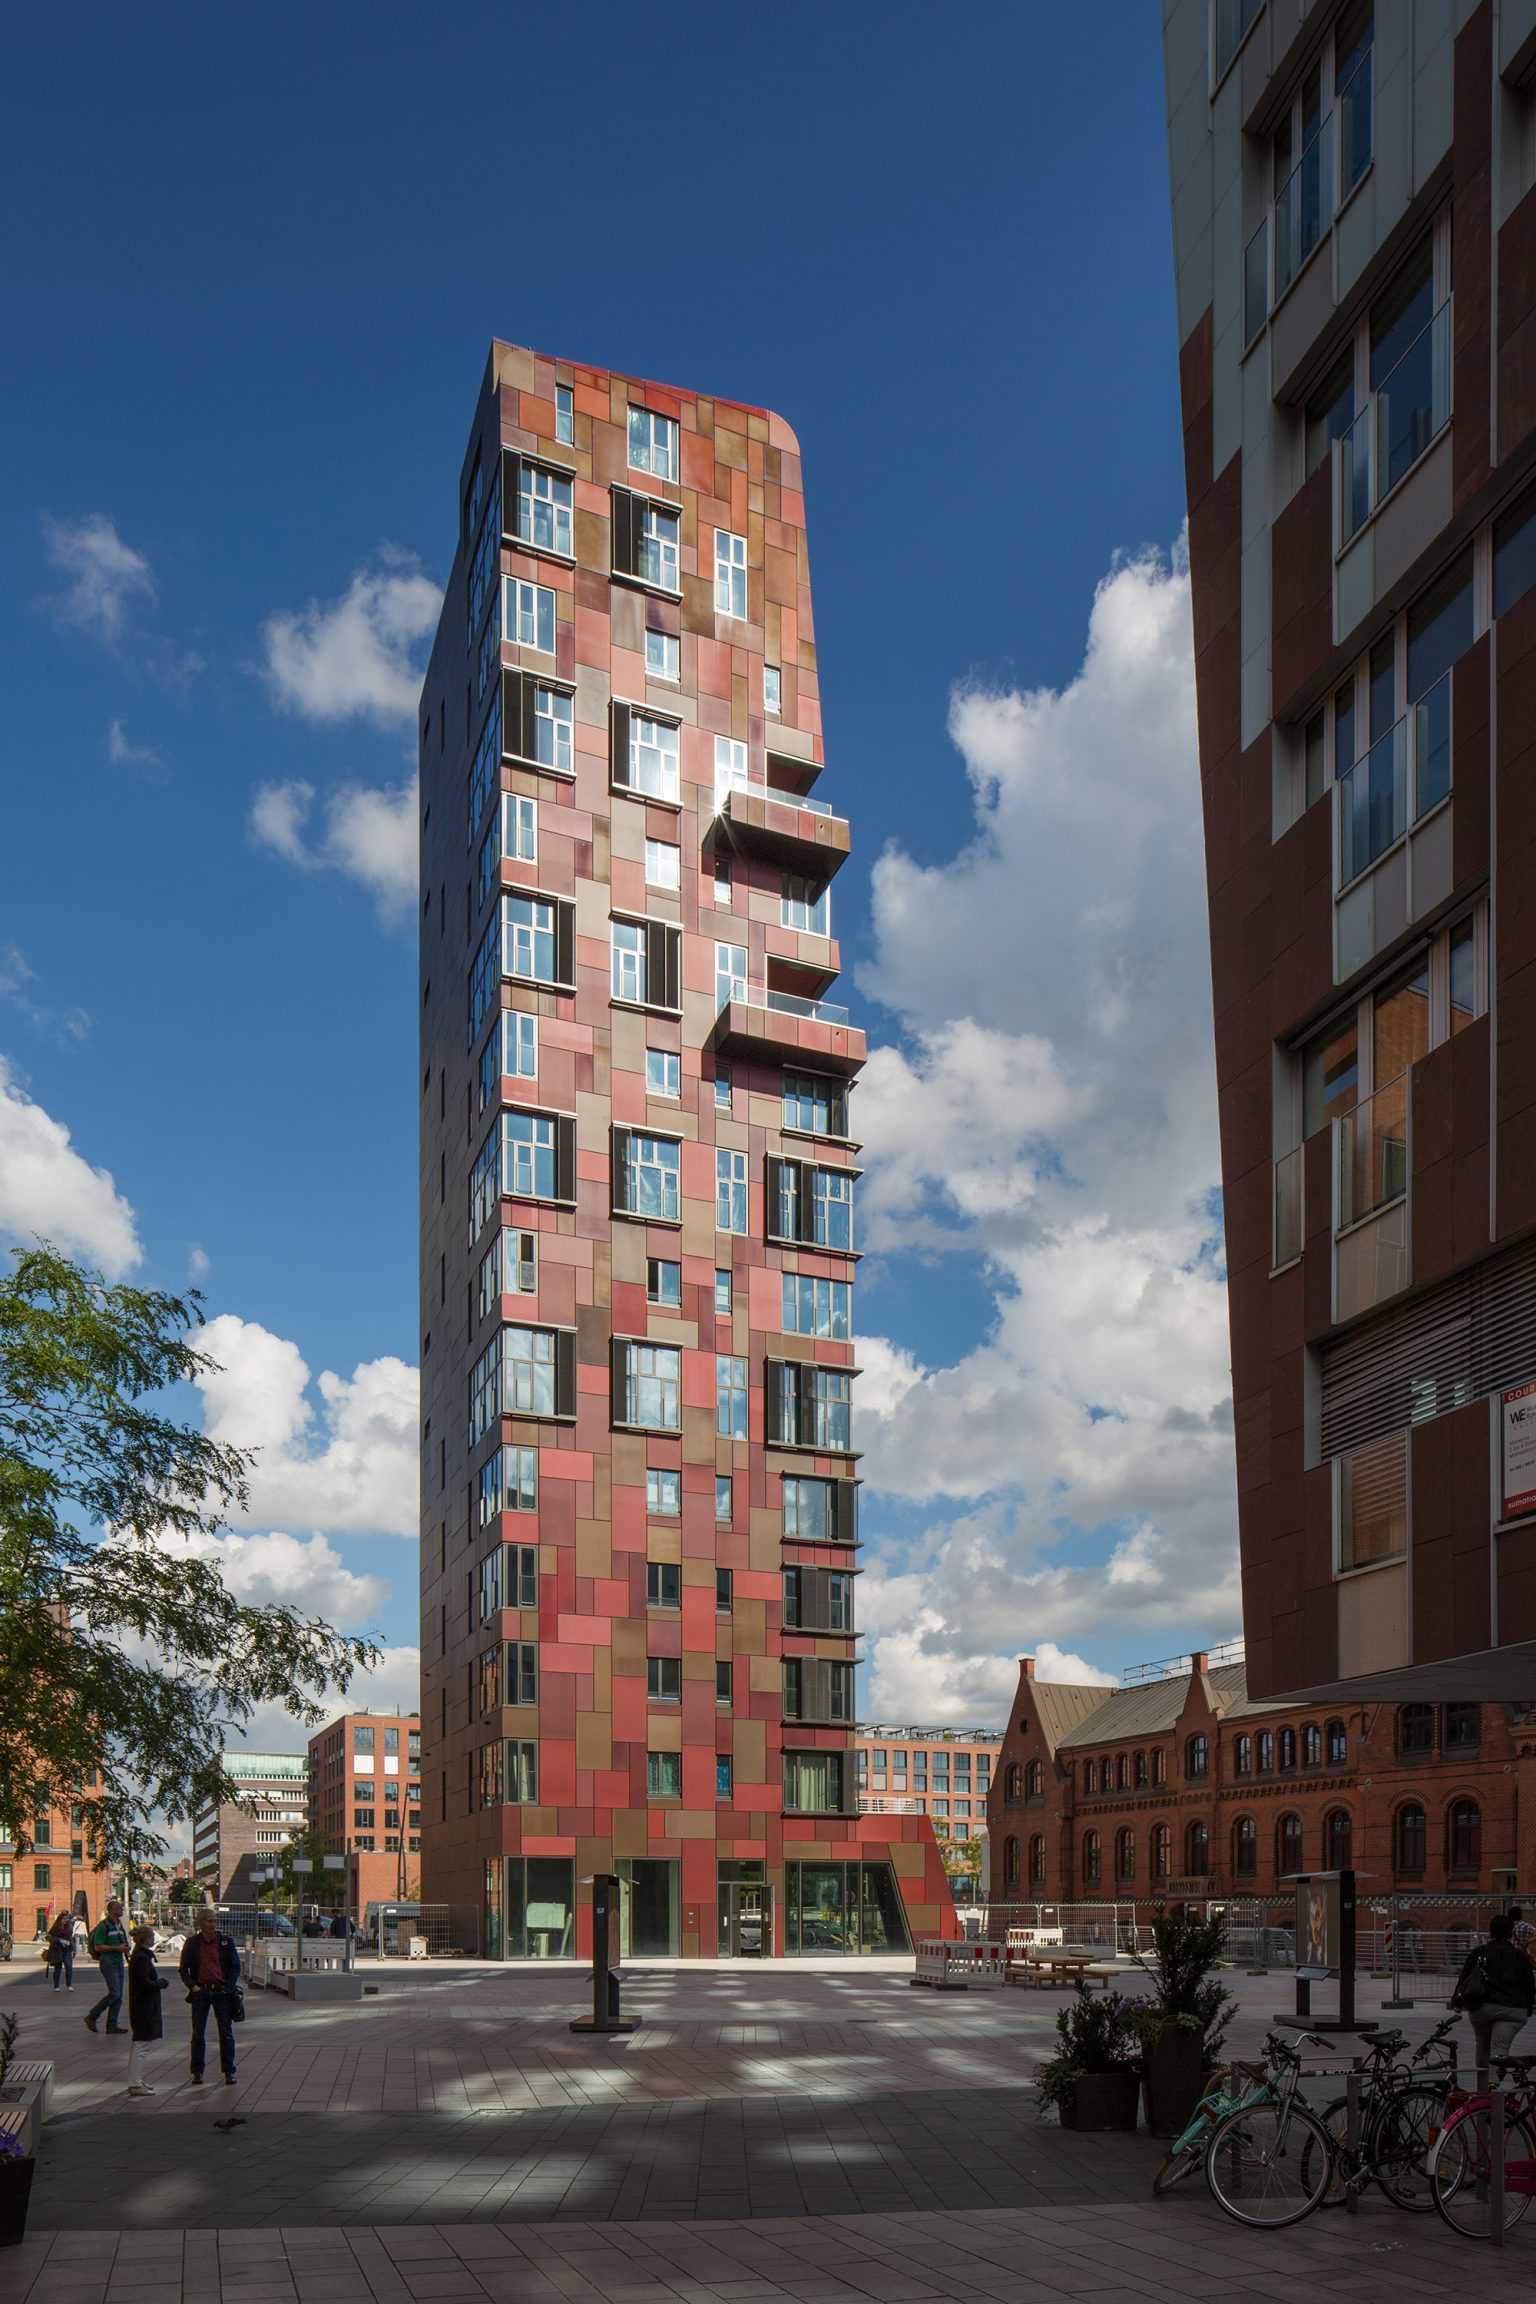 Cinnamon tower, Turm, Hamburg, Ueberseequartier, Hochhaus, Christian Richters